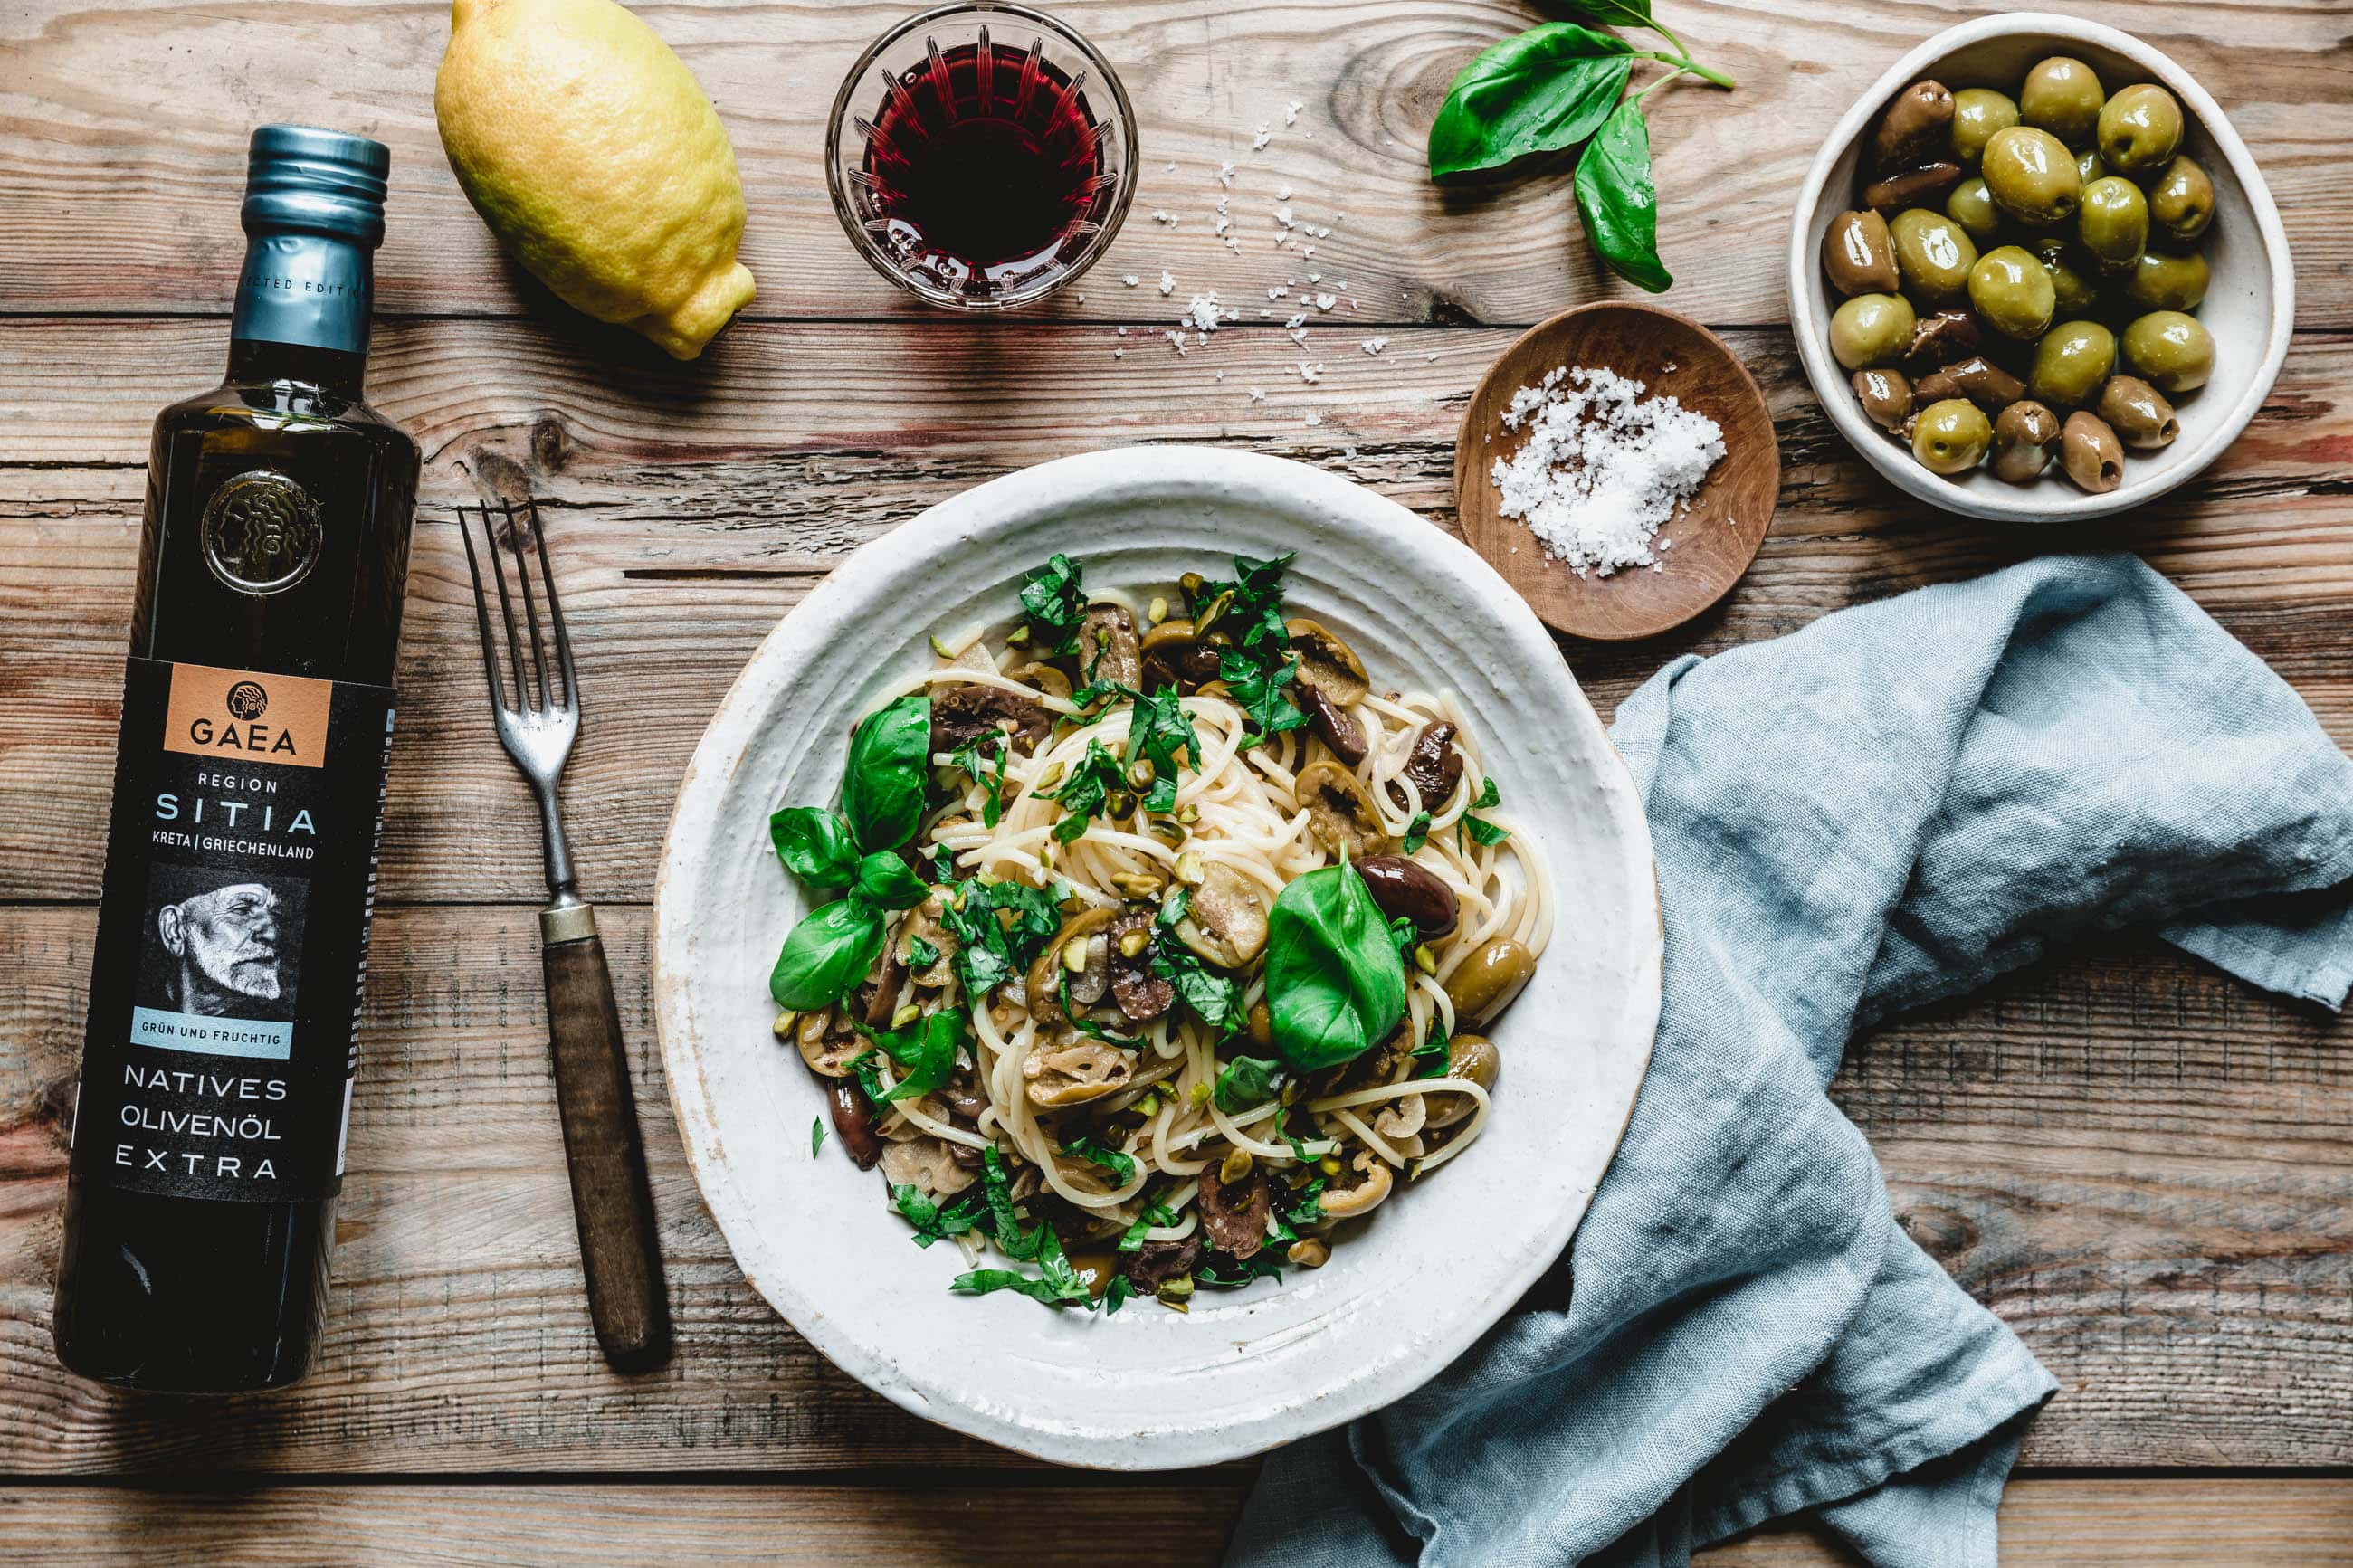 Spaghetti aglio e olio mit Oliven & Pistazien